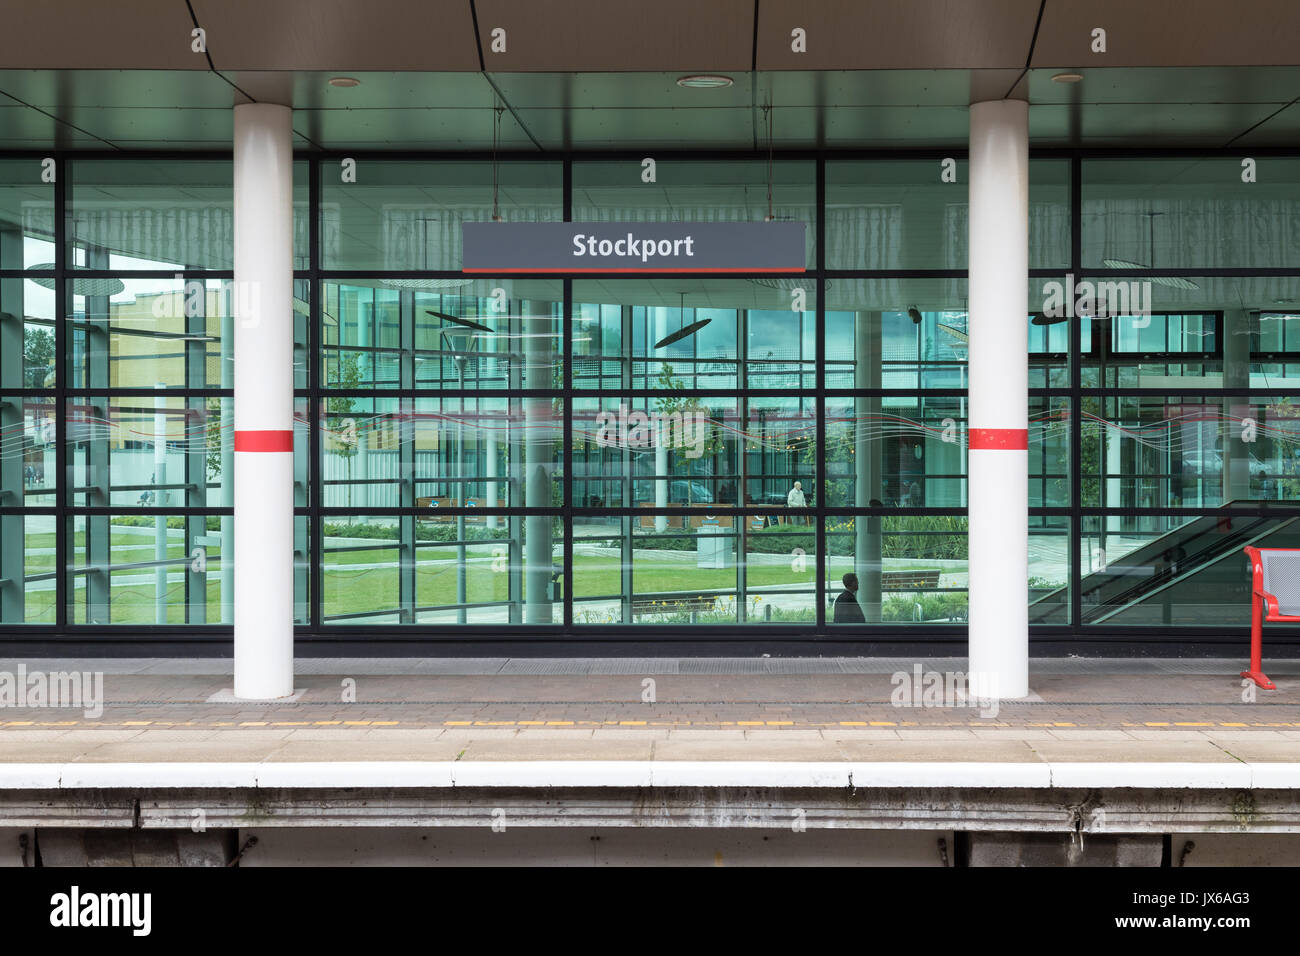 Das glas Bahnhofsgebäude in Stockport Bahnhof zeigt die Station anmelden und Plattform Stockfoto